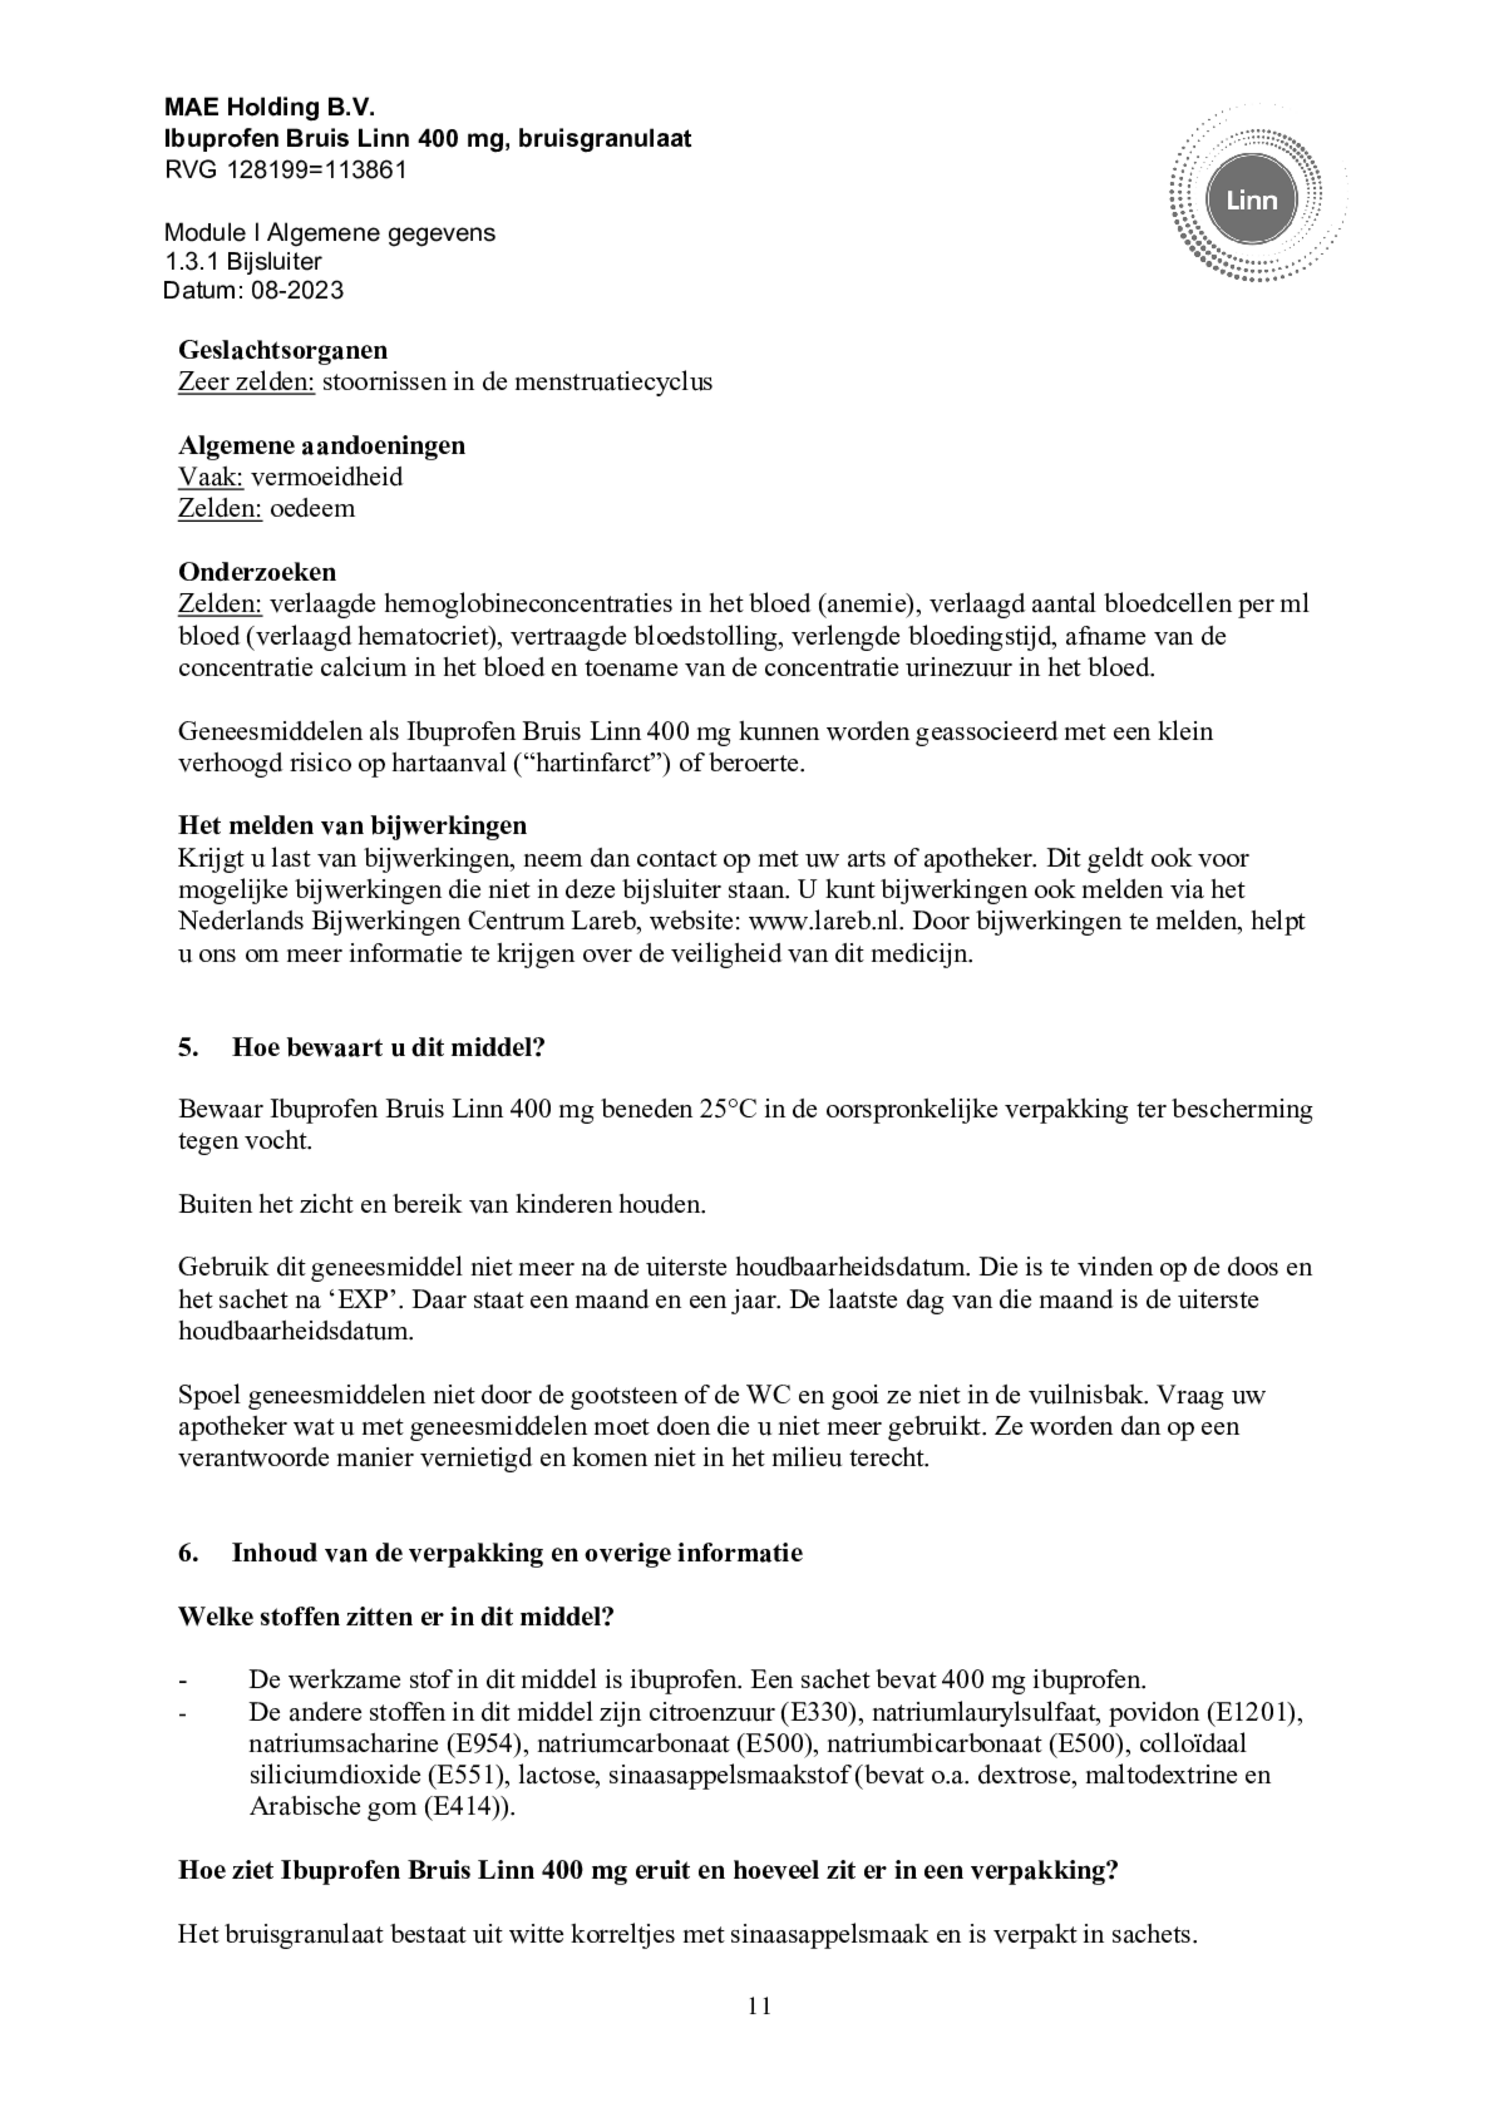 Ibuprofen Bruis Sachets 400mg afbeelding van document #11, bijsluiter